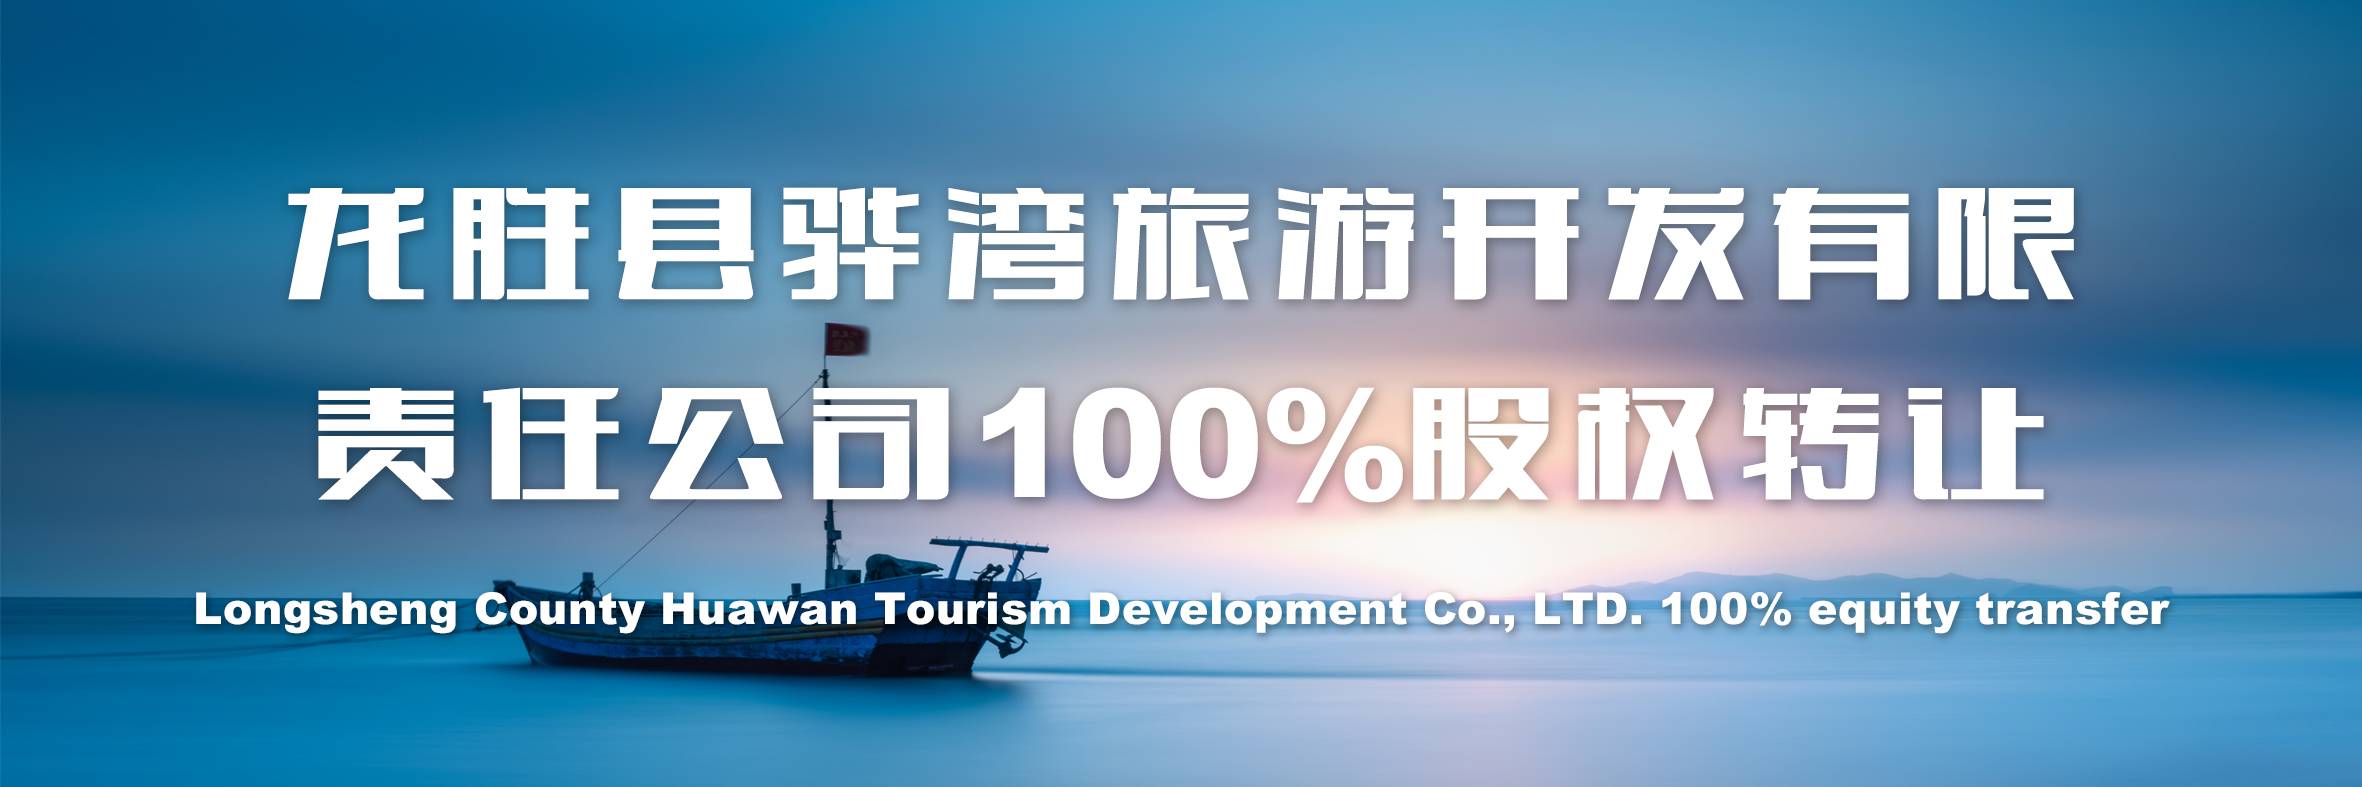 龙胜县骅湾旅游开发有限责任公司100%股权转让